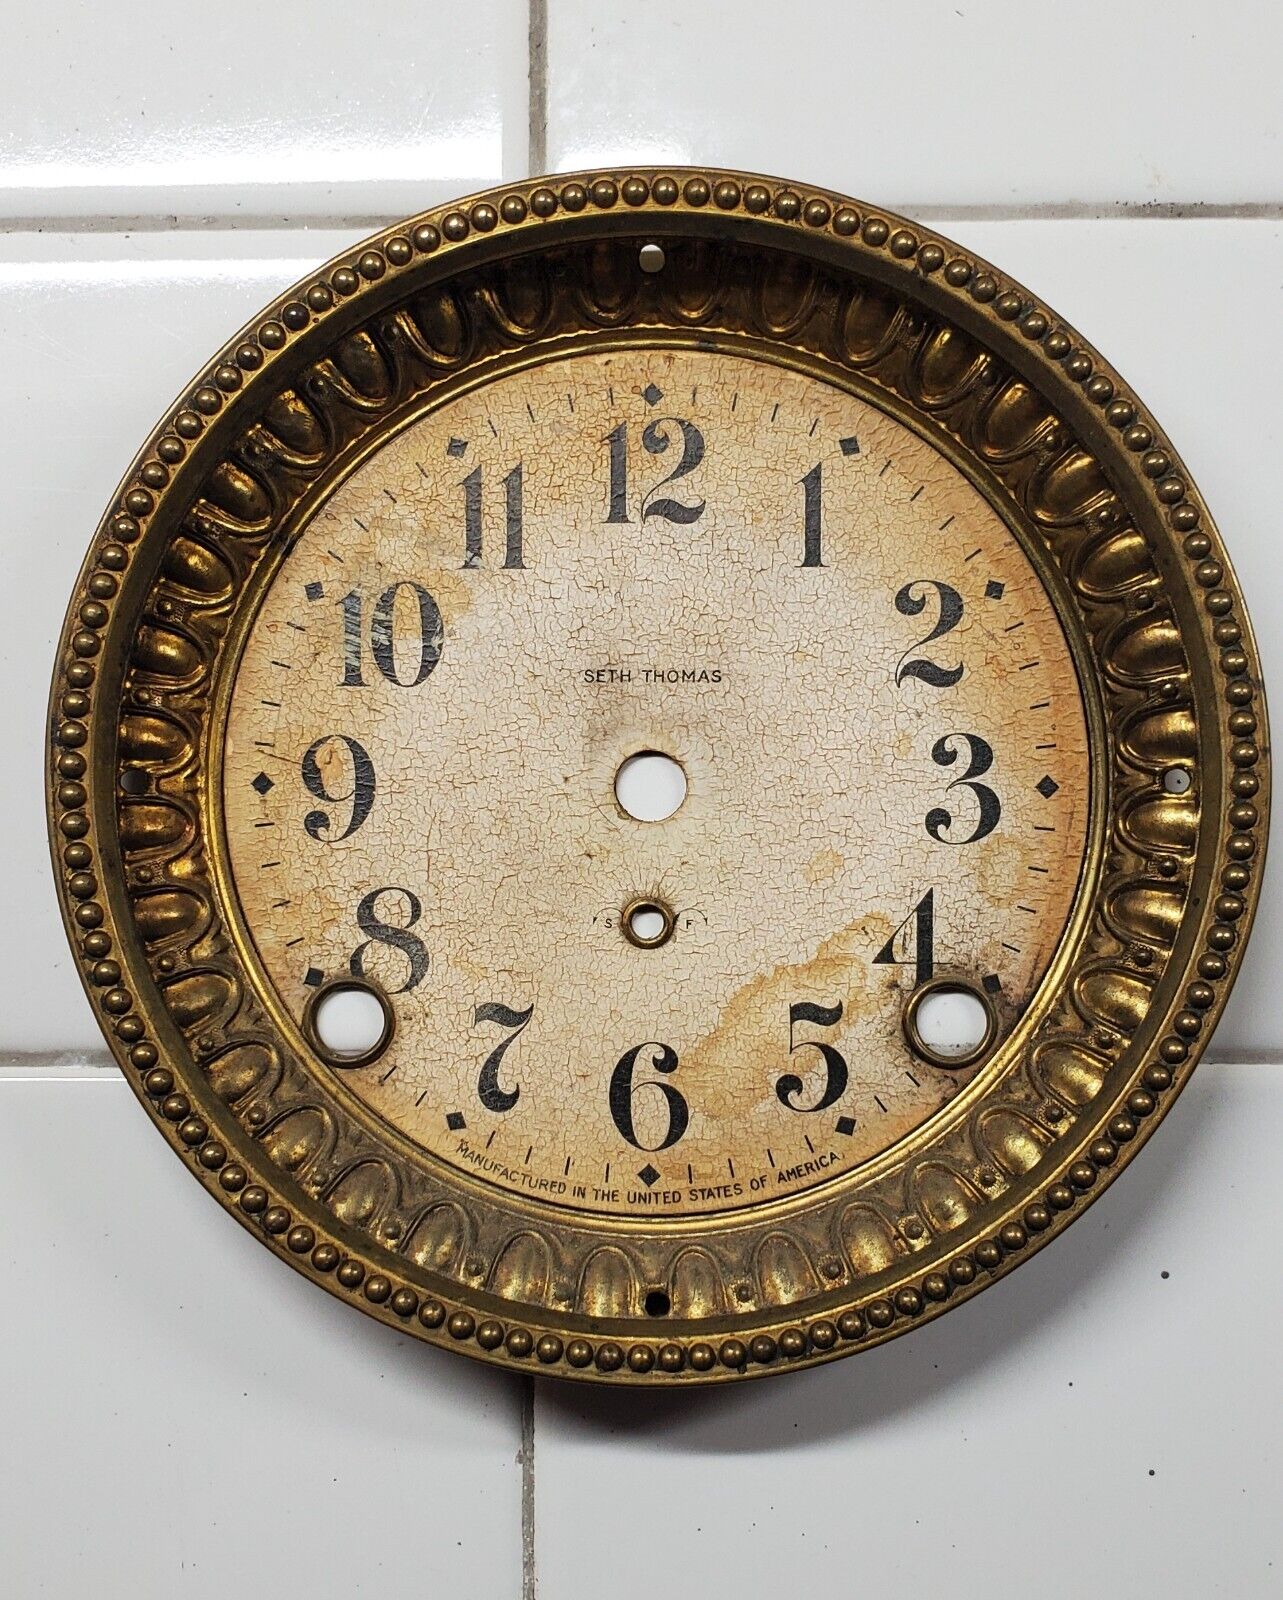 Antique Brass Seth Thomas Mantel Clock Dial and Bezel Original Con. No Glass